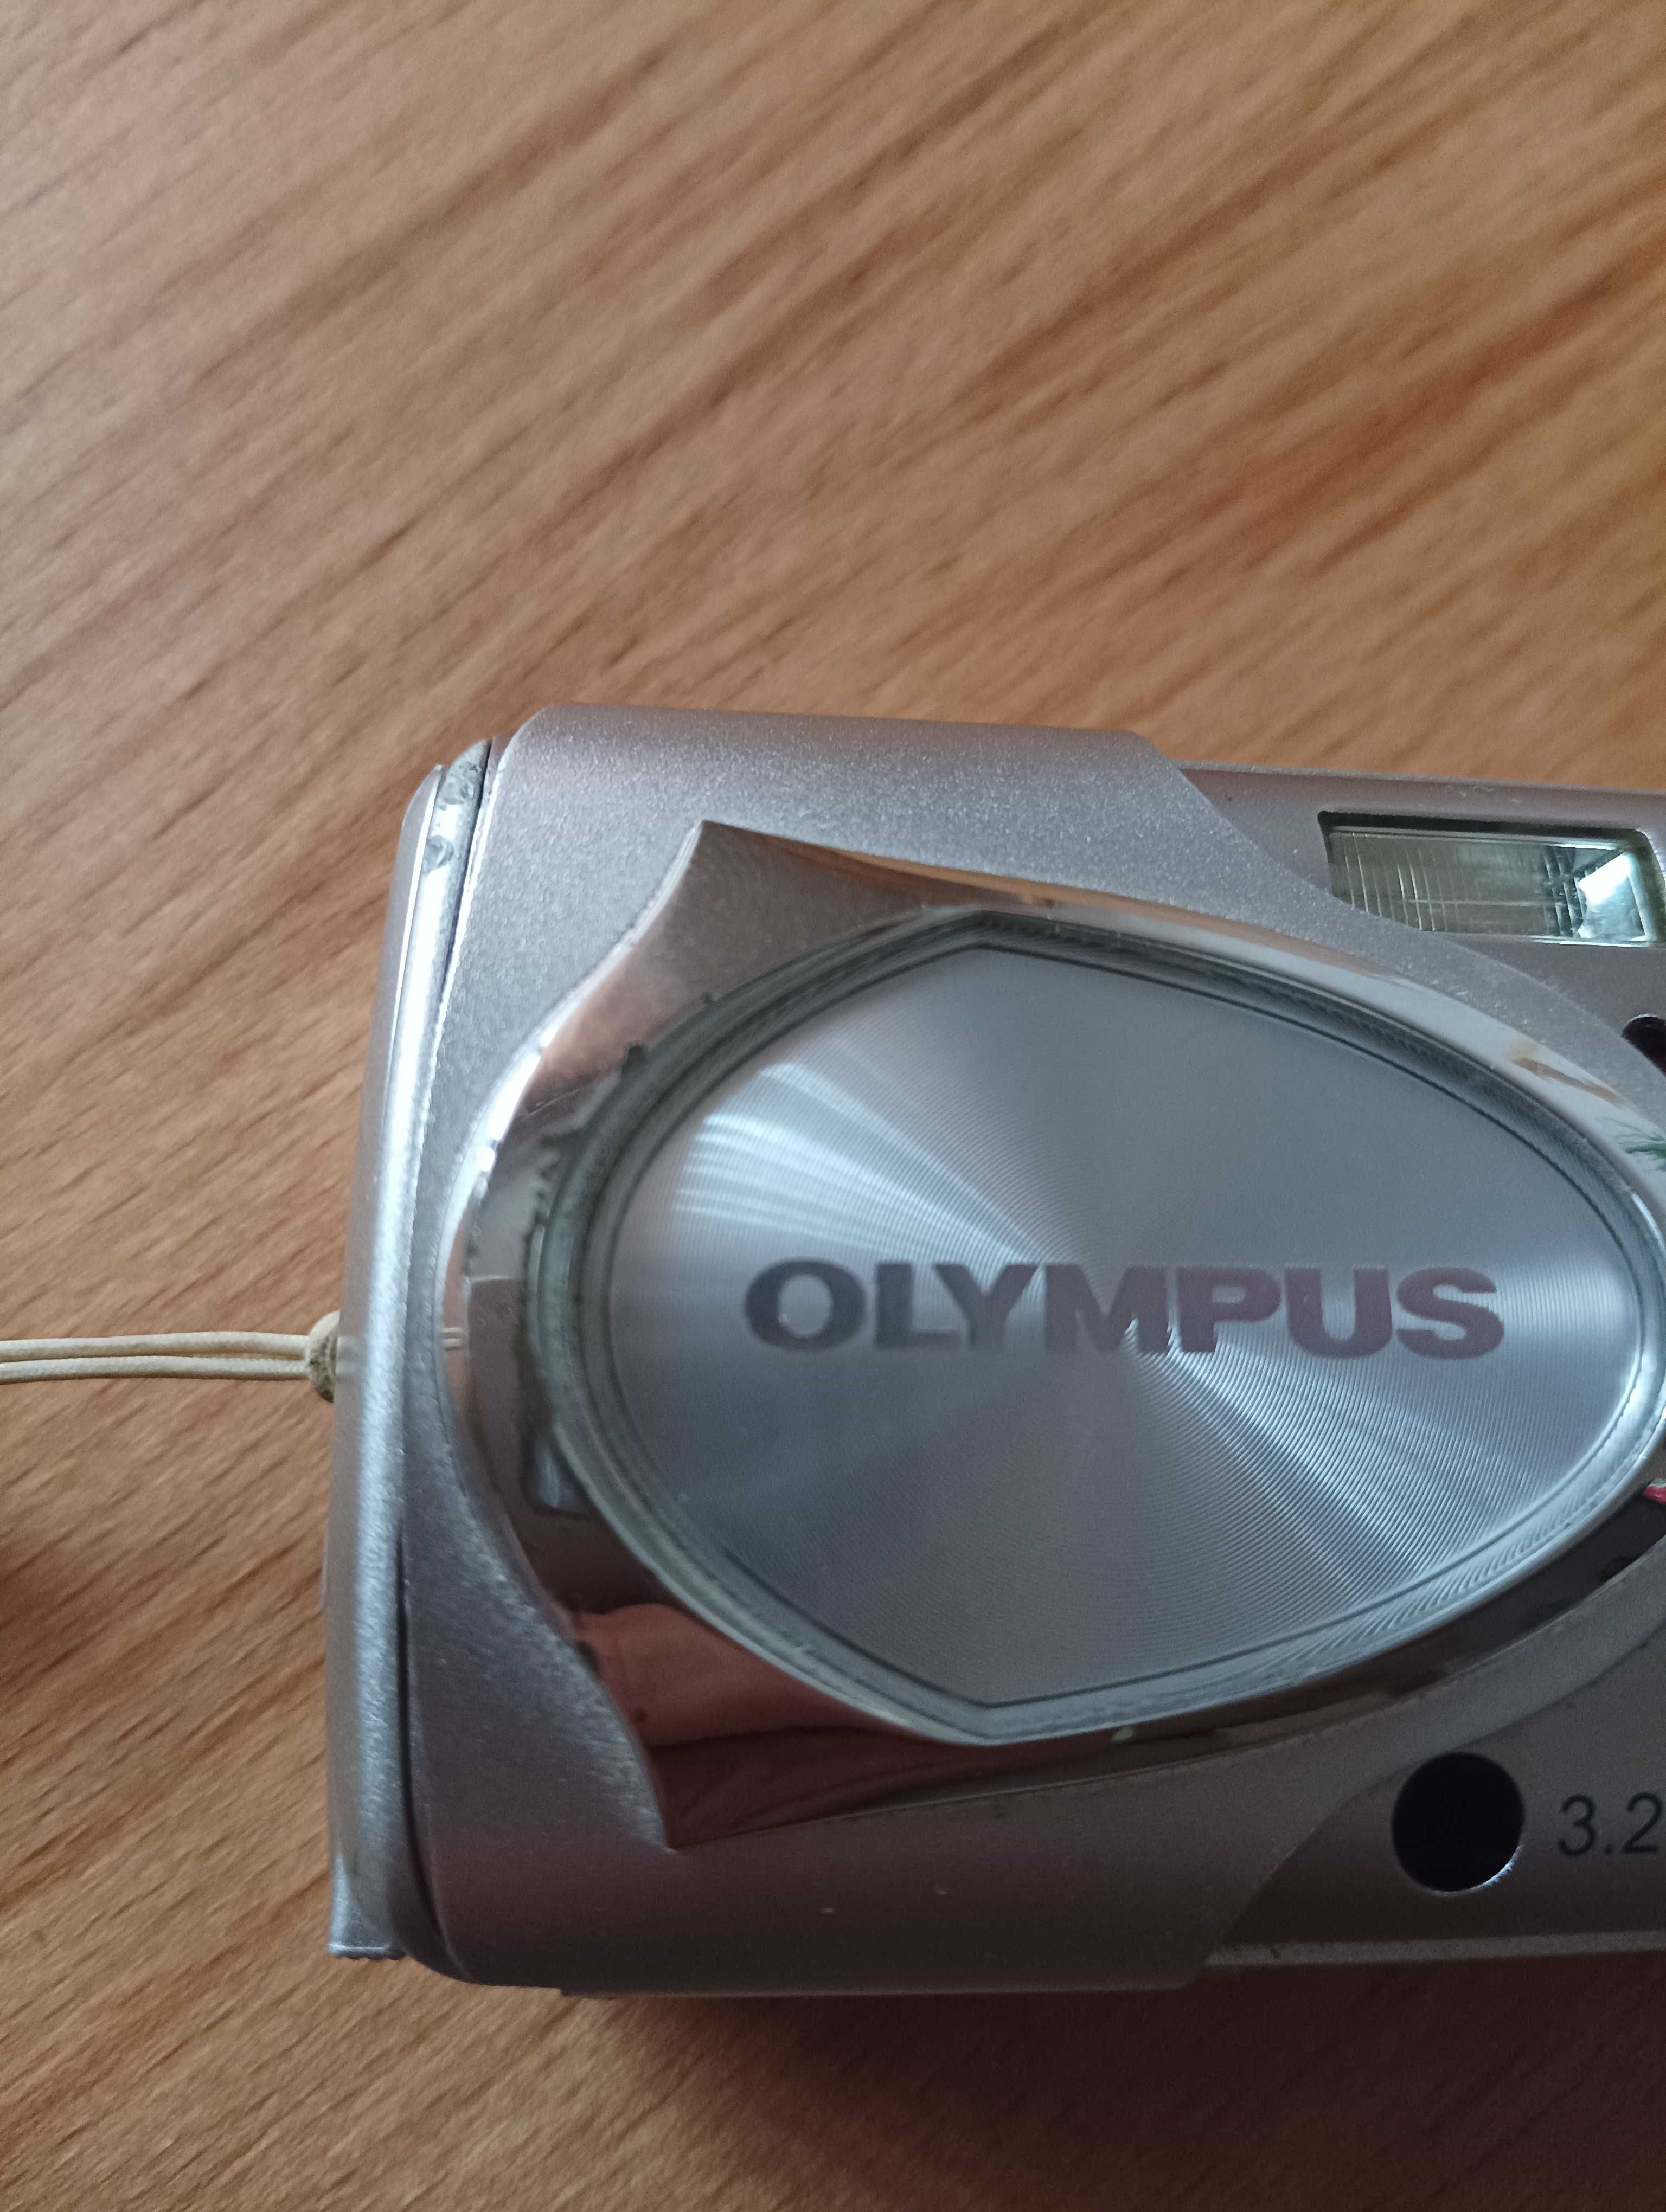 Olympus 300 digital